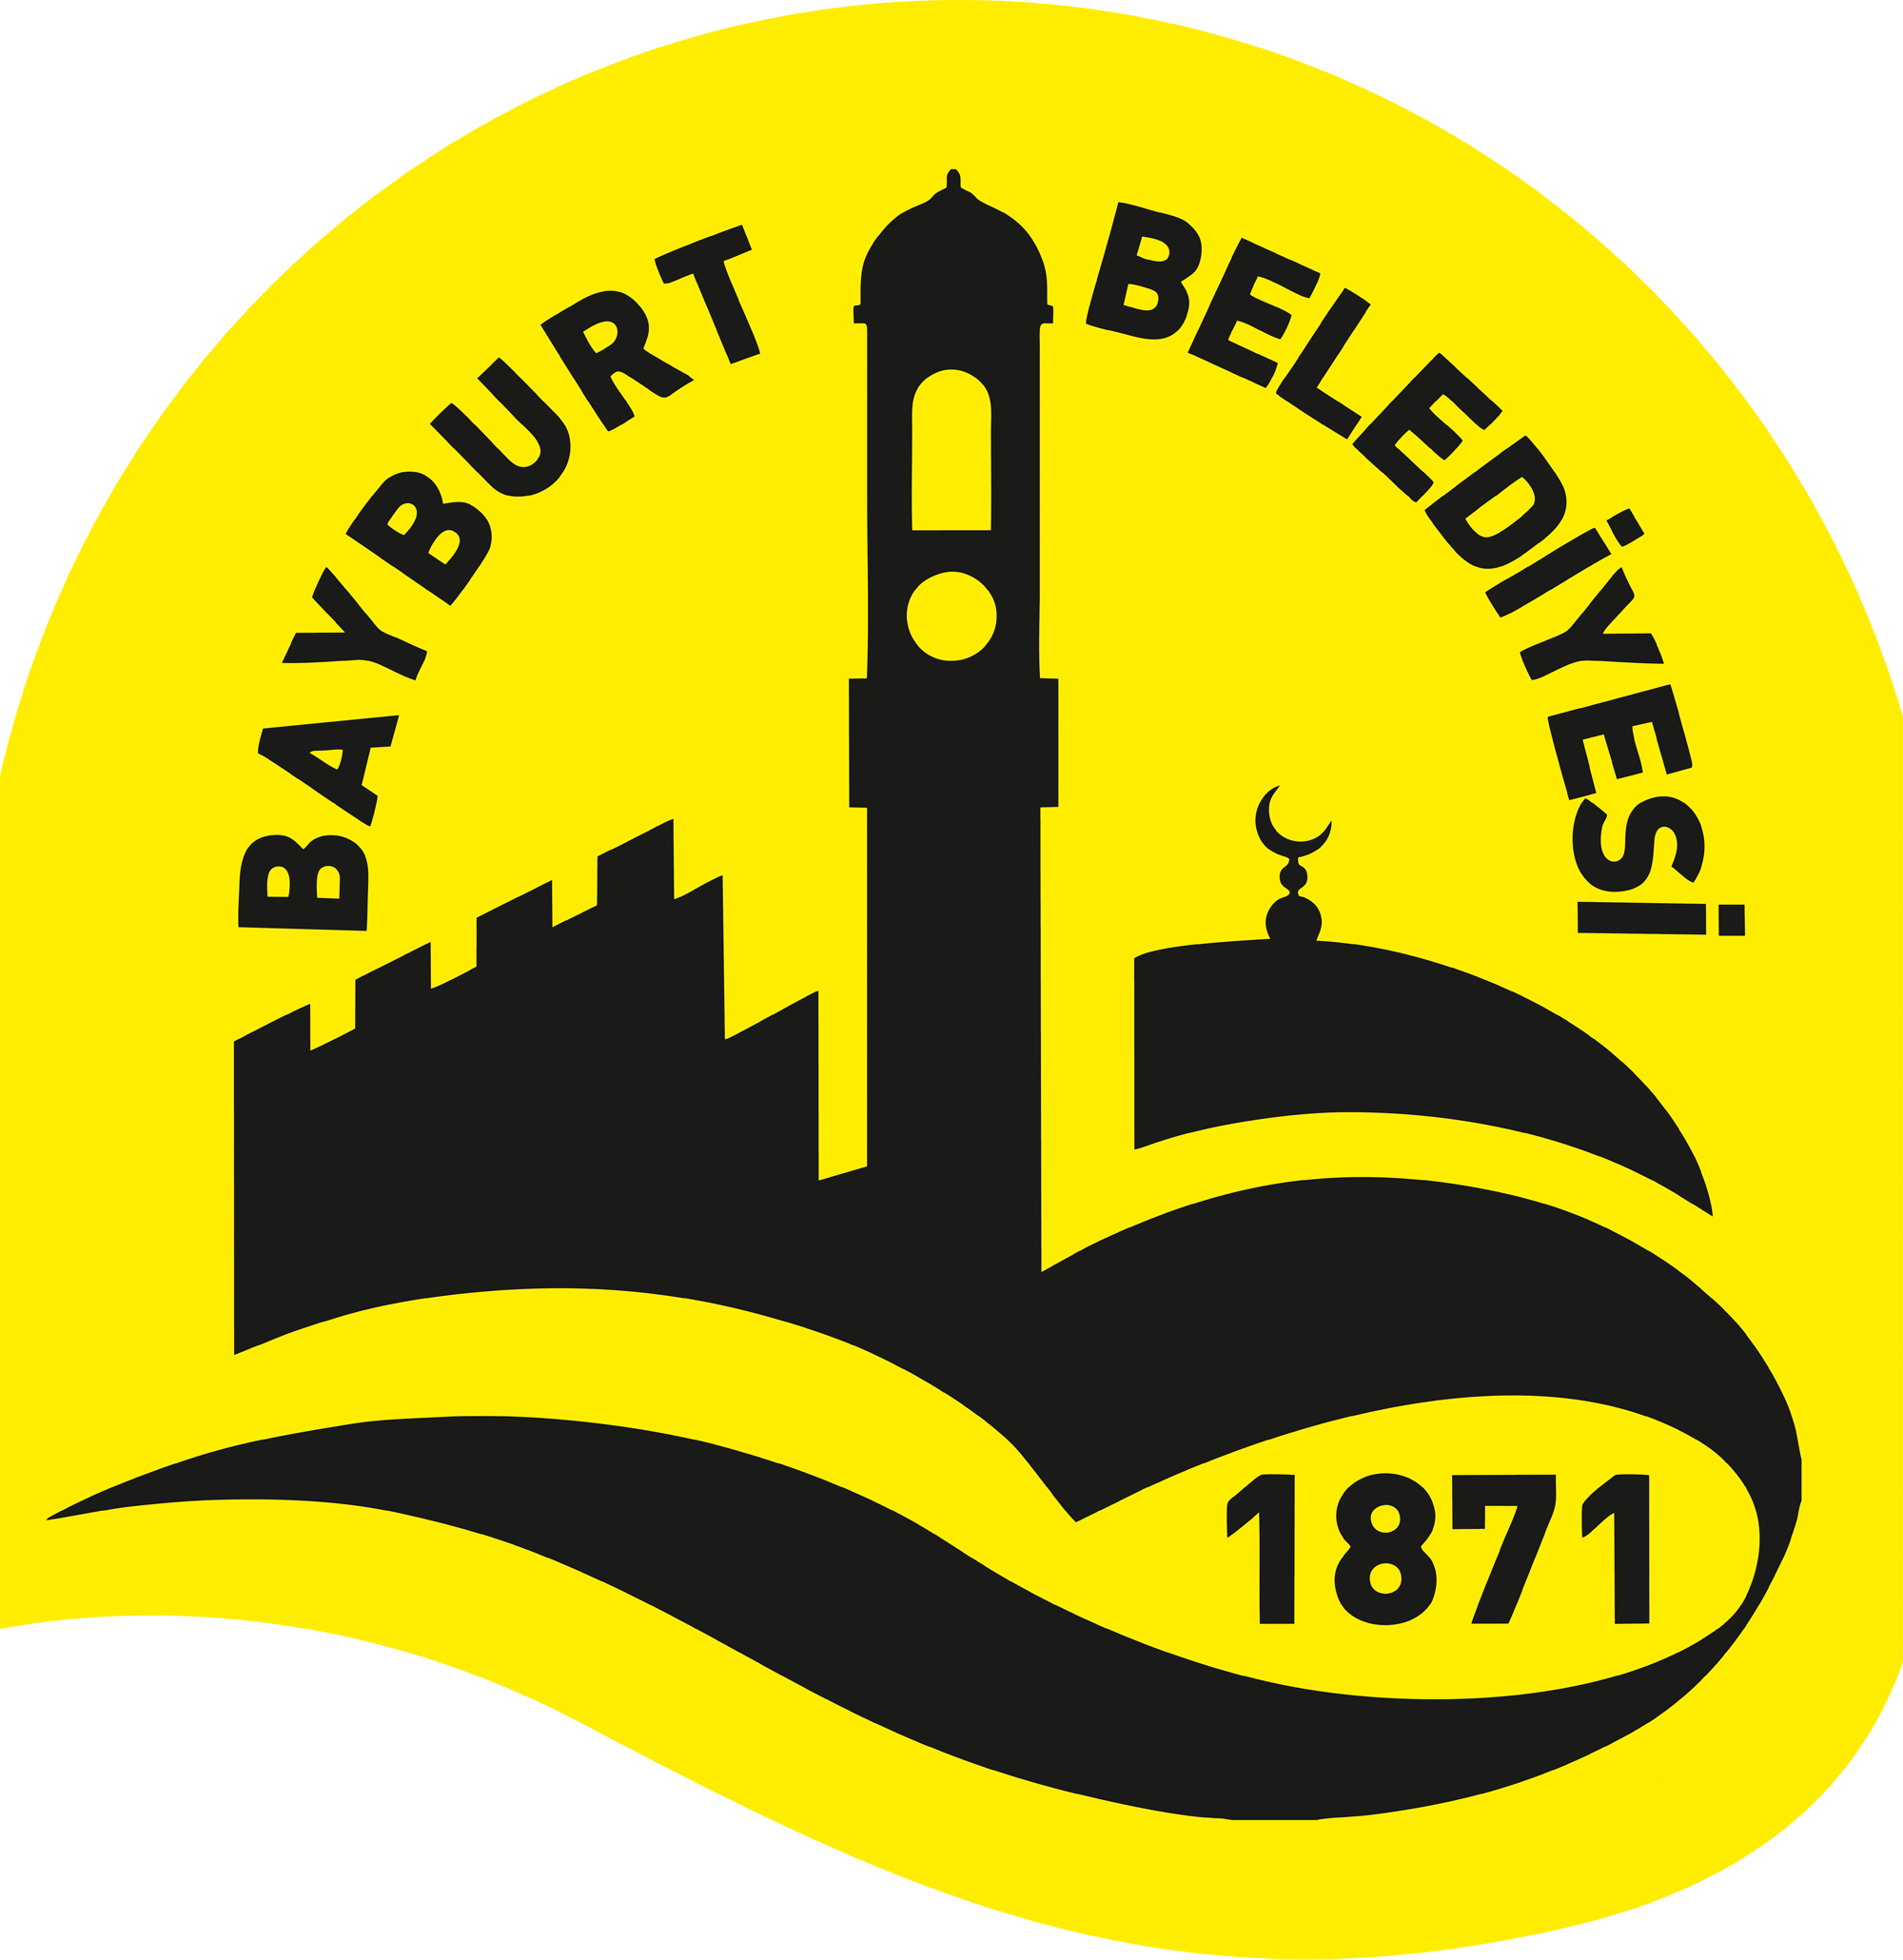 Bayburt Belediyesi Logosu